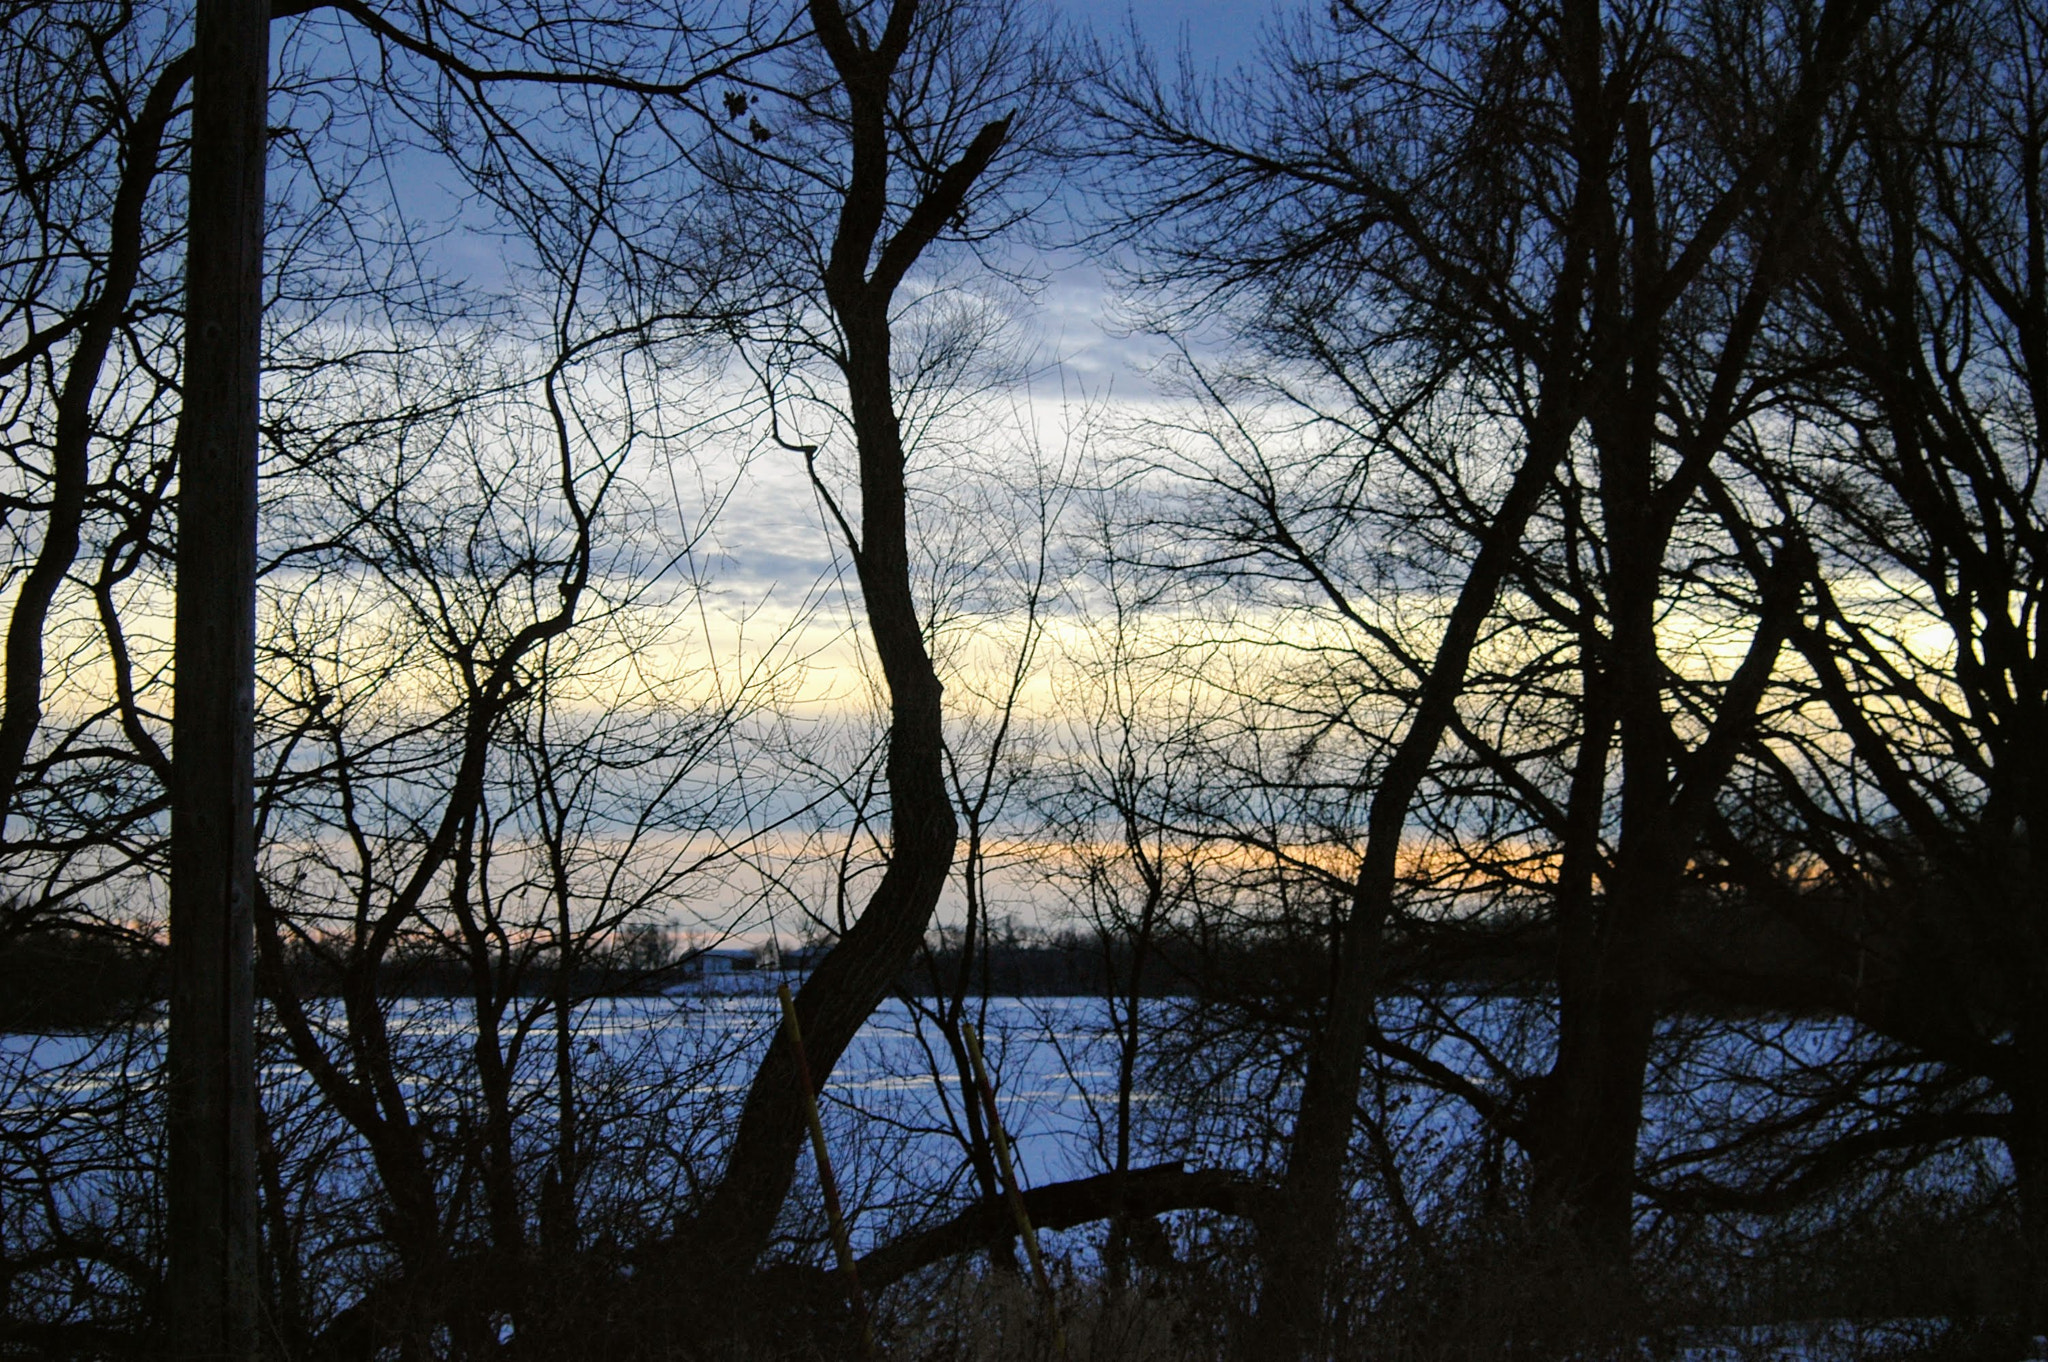 Nikon D70 + AF Zoom-Nikkor 35-80mm f/4-5.6D sample photo. Sunset in rural minnesota photography